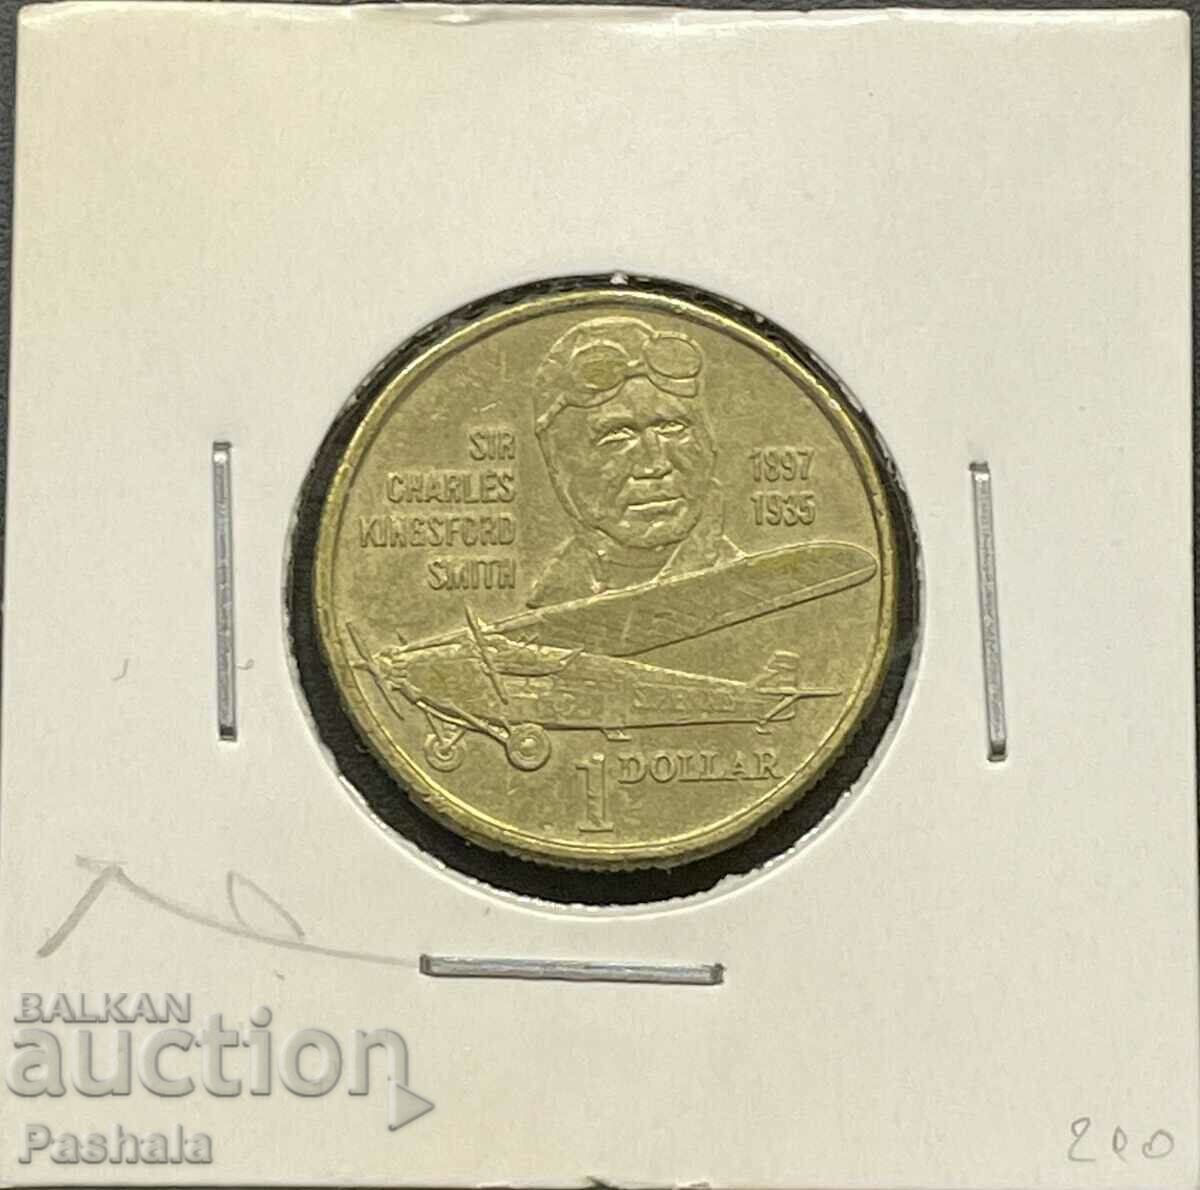 Australia $1 1997